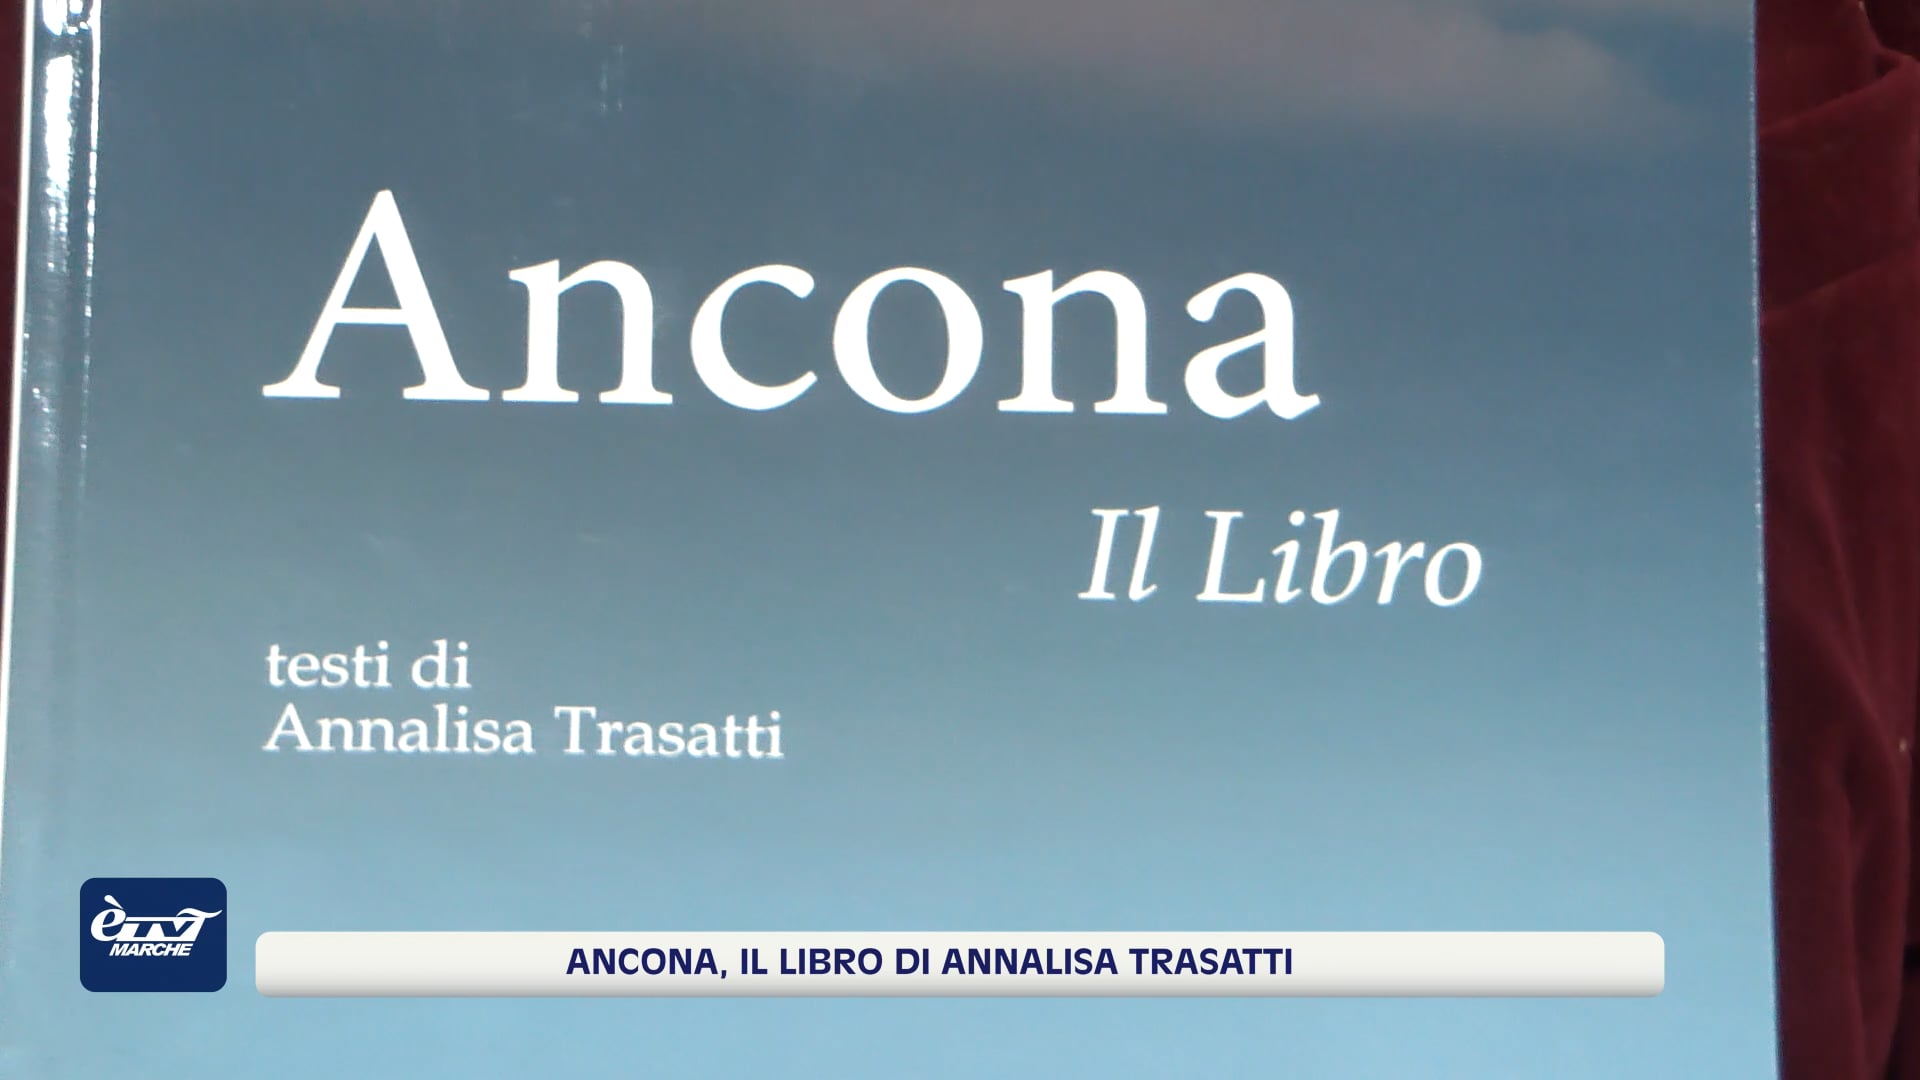 Ancona, il libro. La città vista dagli occhi della guida Annalisa Trasatti - VIDEO 